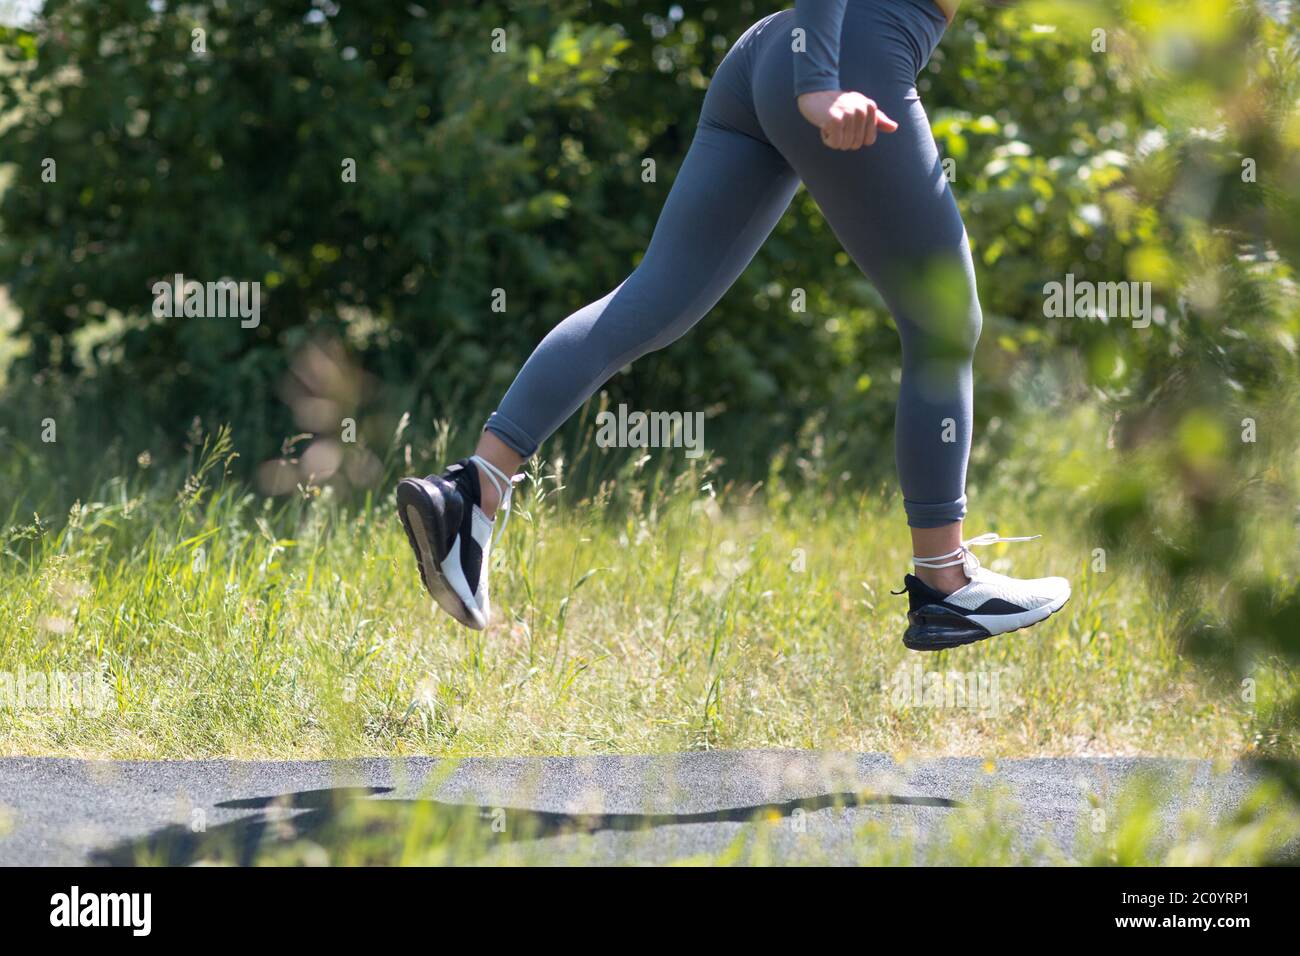 Laufer Frau In Laufschuhen Nahaufnahme Der Frau Sportliche Beine Jogging Fur Frauen Stockfotografie Alamy